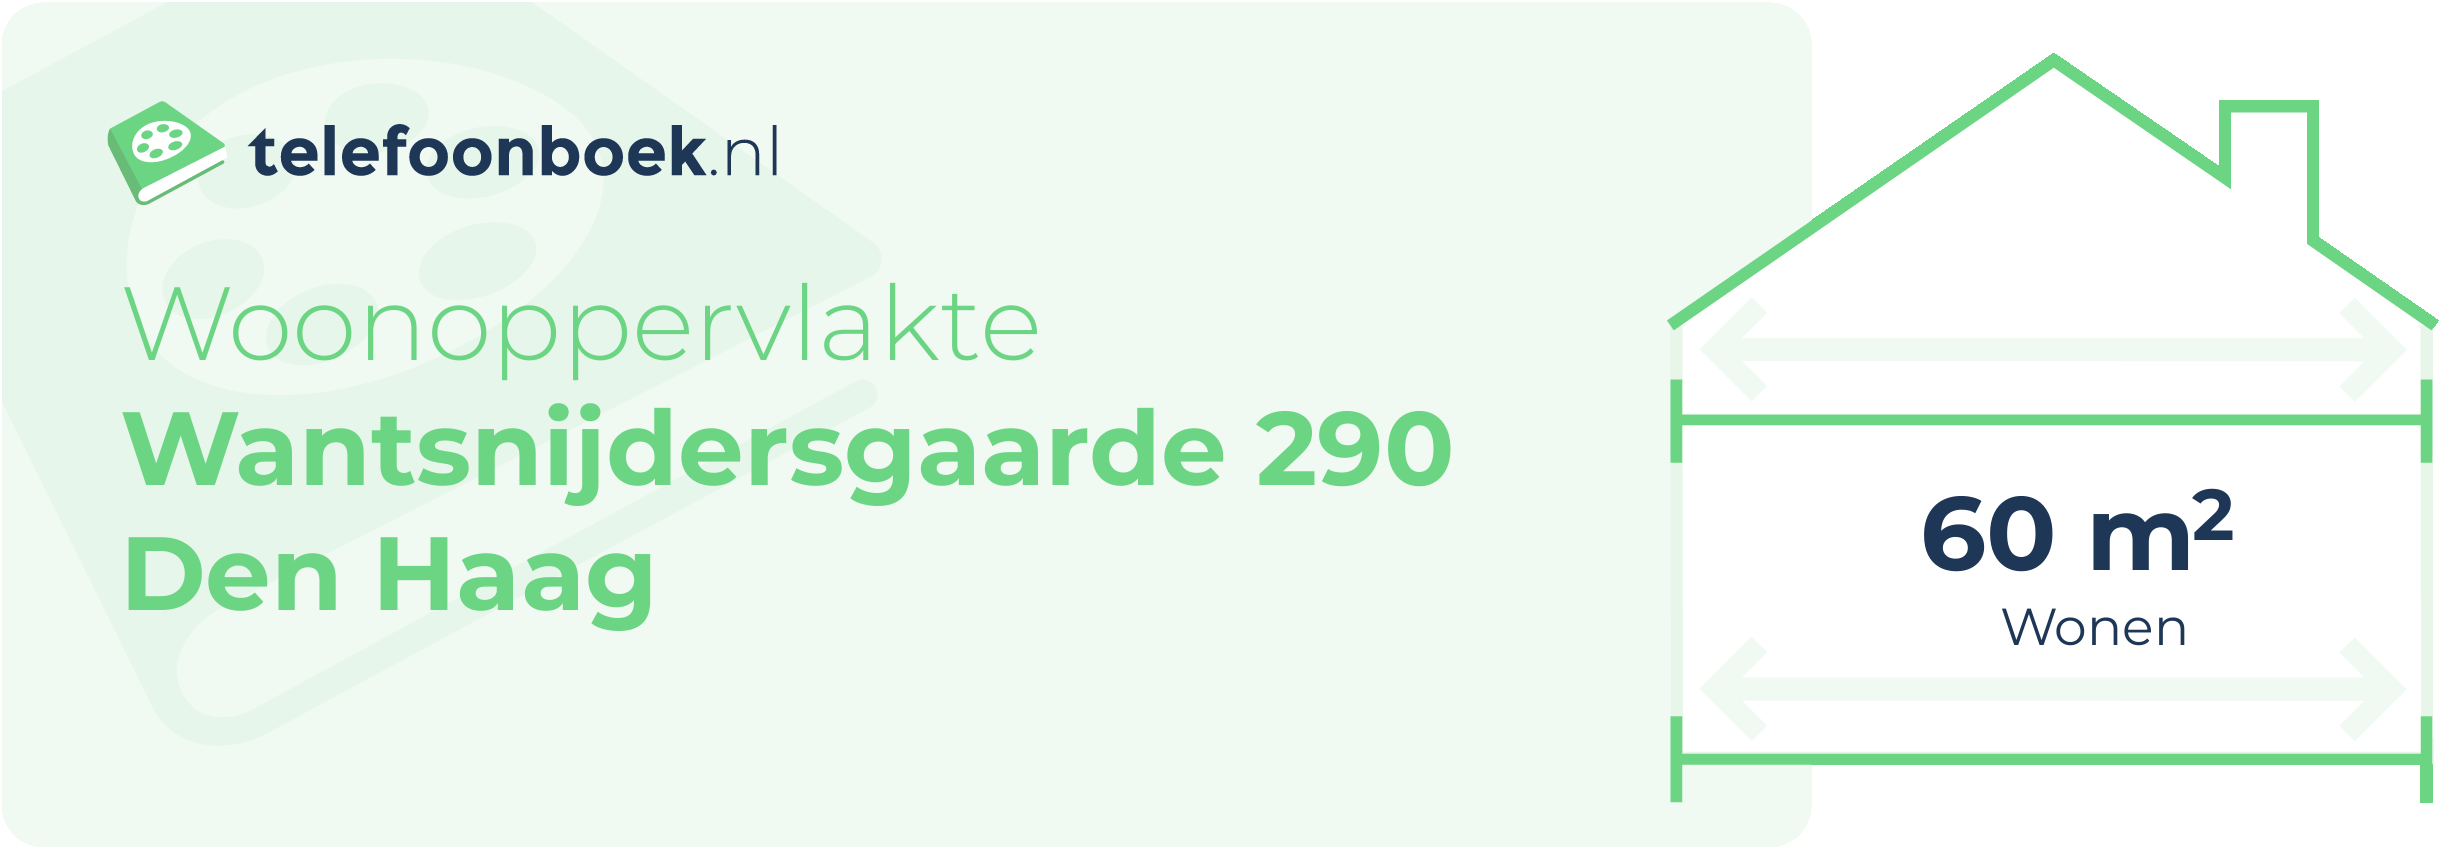 Woonoppervlakte Wantsnijdersgaarde 290 Den Haag